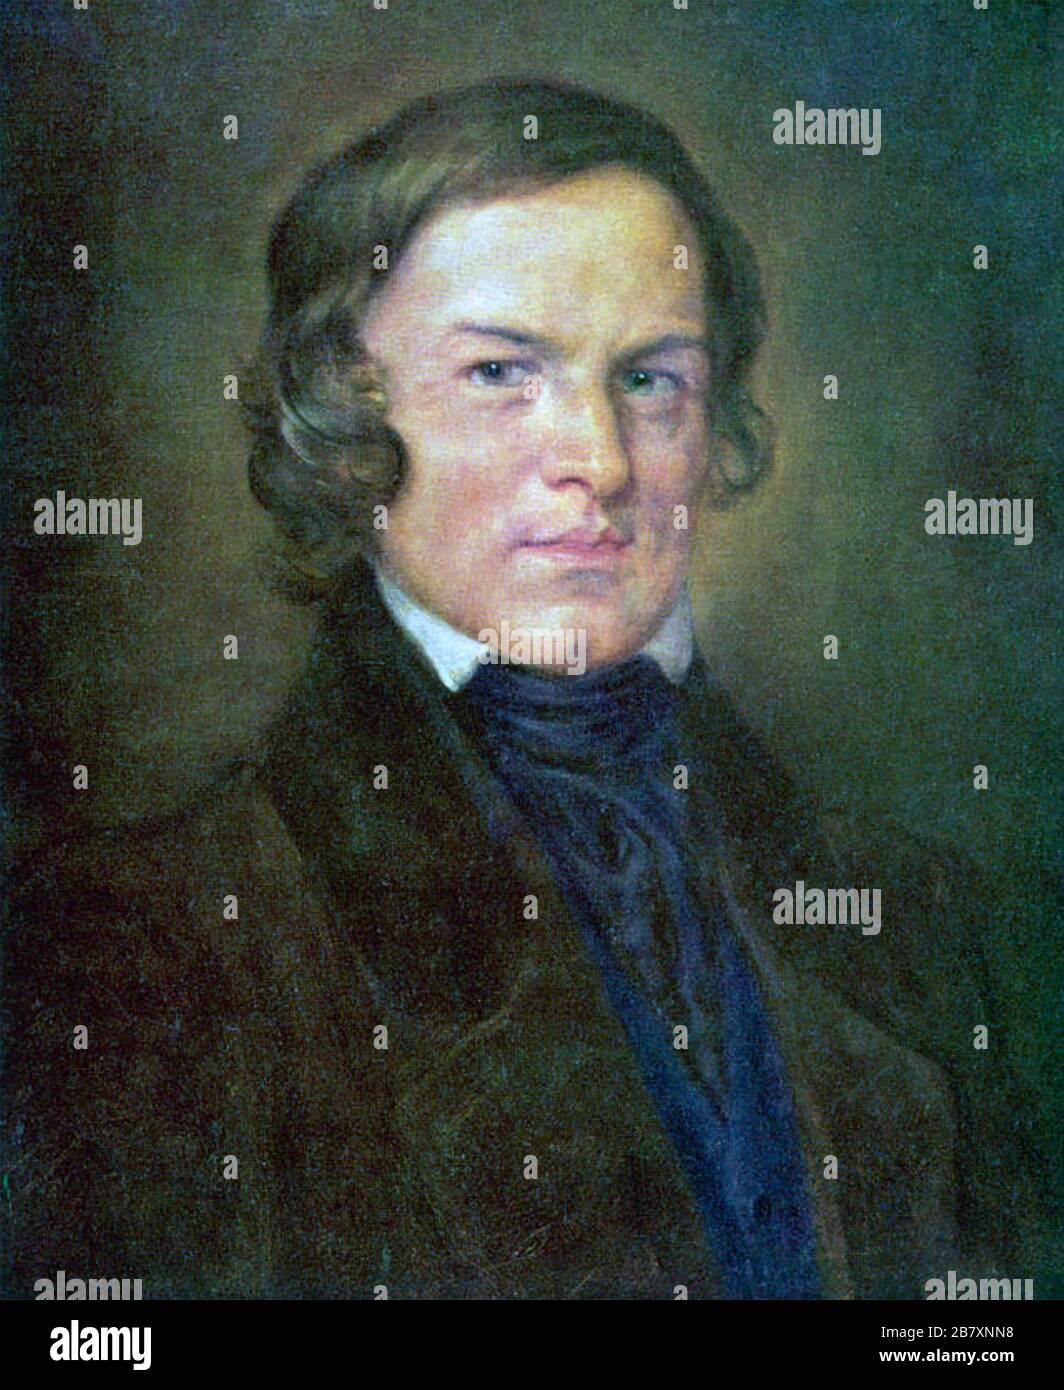 ROBERT SCHUMANN (1810-1856) German composer about 1845 Stock Photo